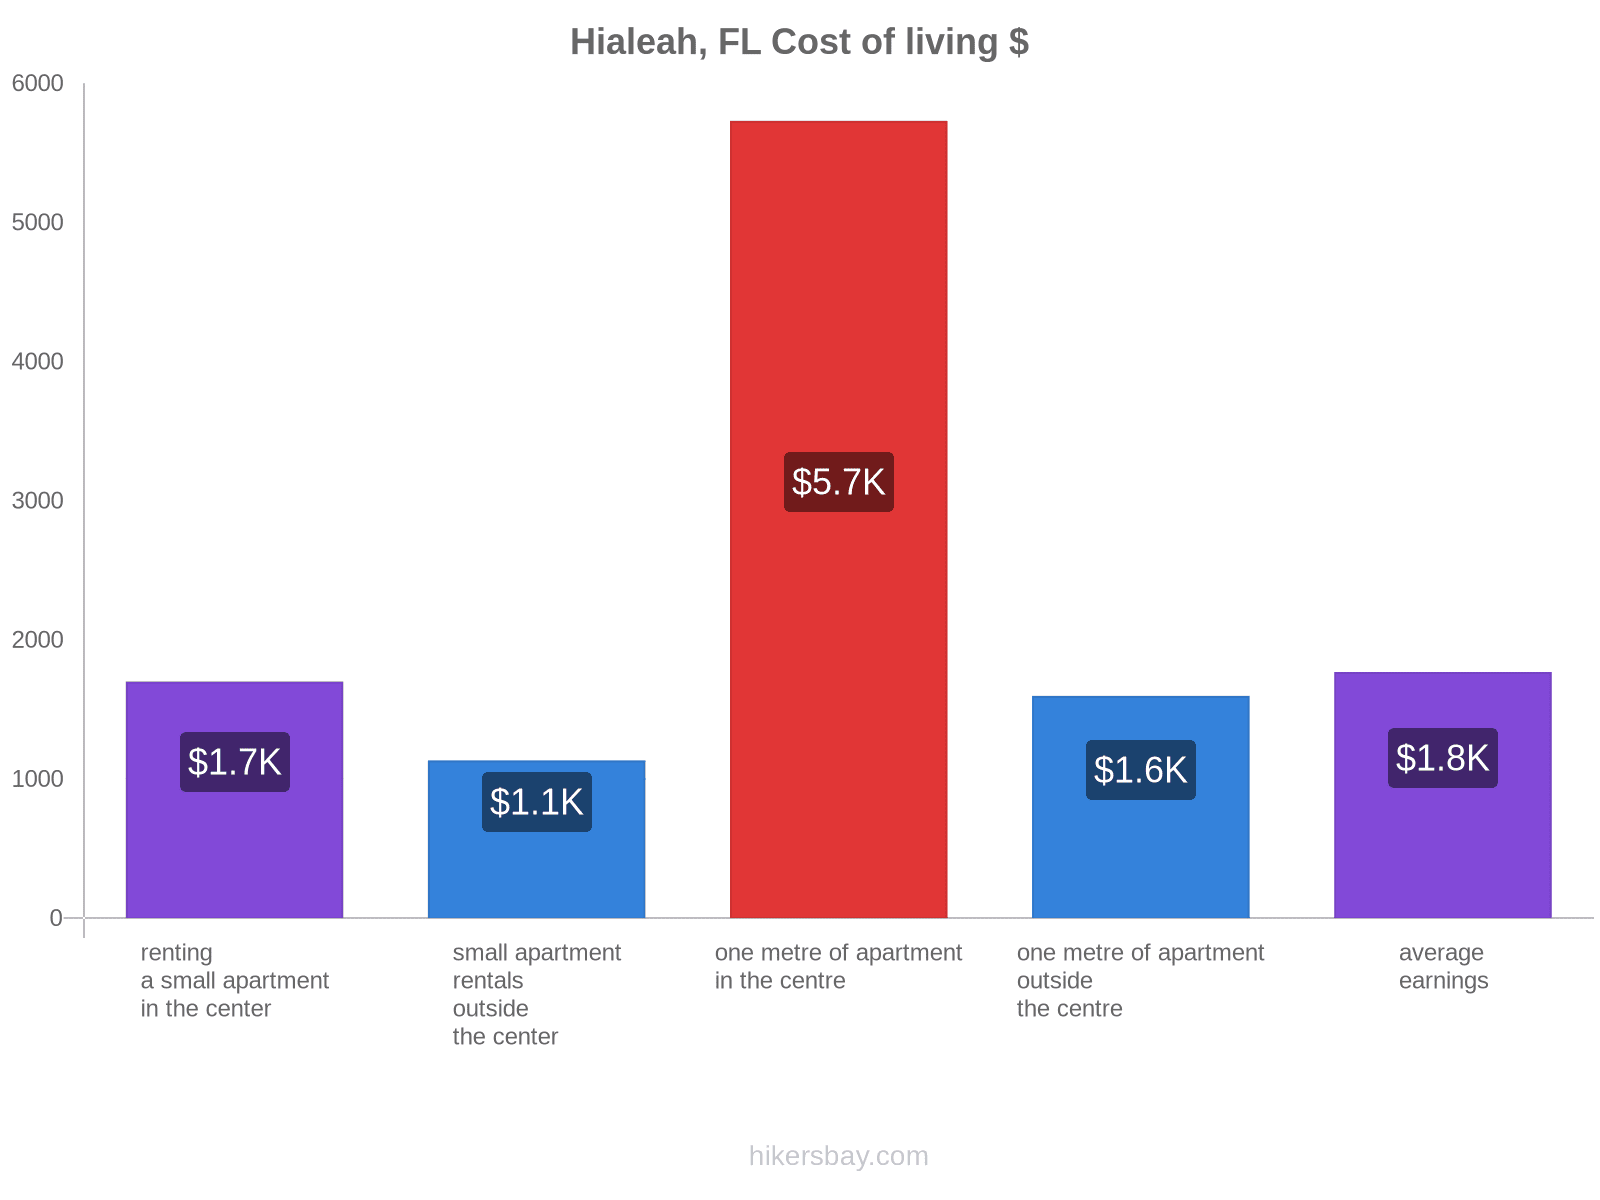 Hialeah, FL cost of living hikersbay.com